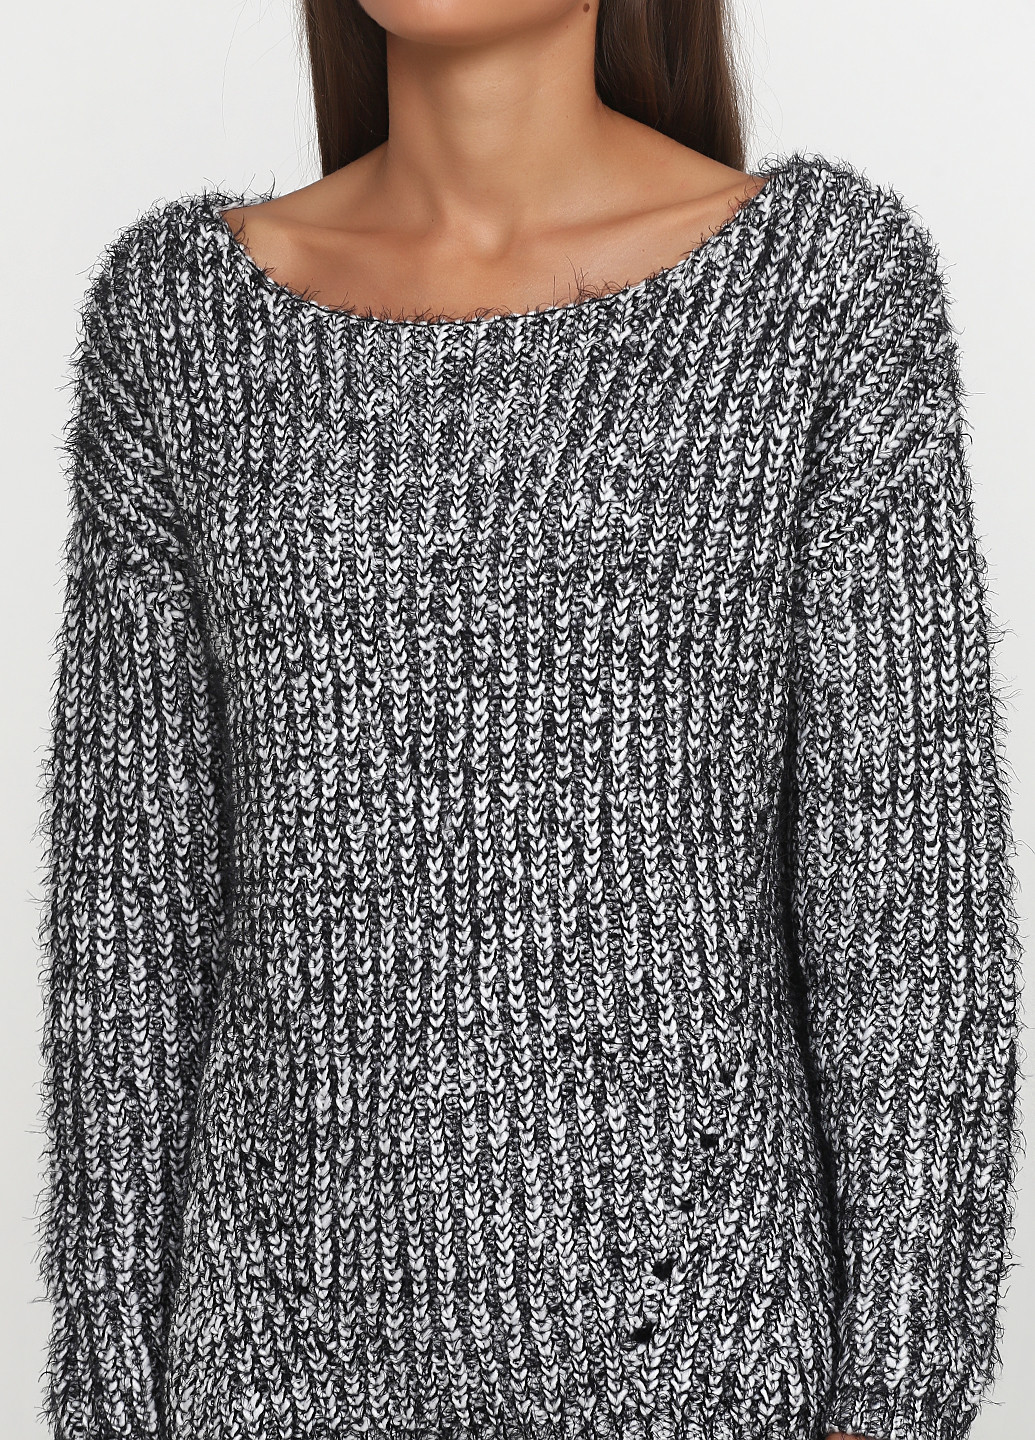 Черно-белый демисезонный свитер джемпер Etam